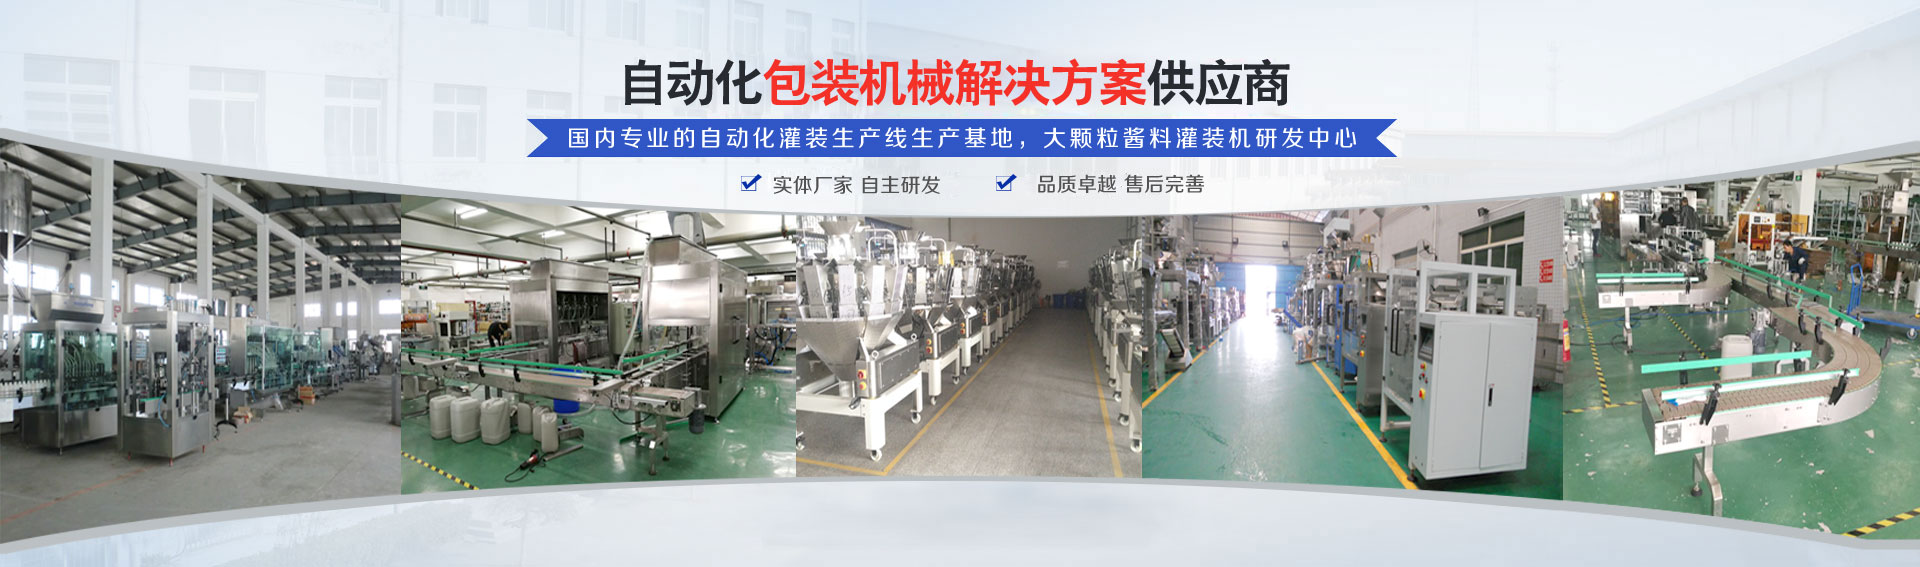 專業(ye)的(de)自動化灌裝(zhuang)機生產線研發基地